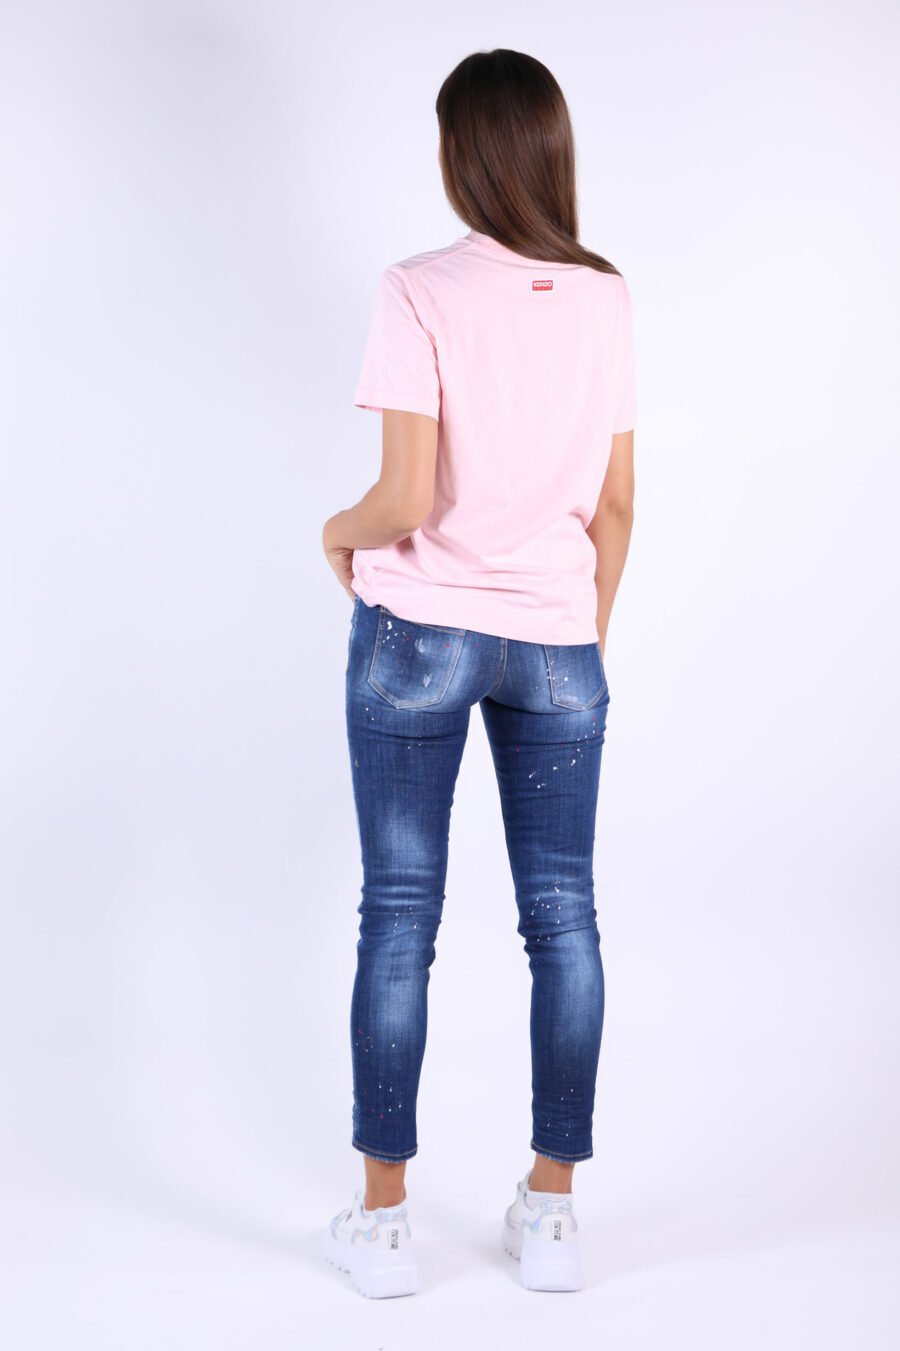 Jeans "Jennifer Jean" blau mit Farbspritzern und verblichenem Effekt - 361223054662201900